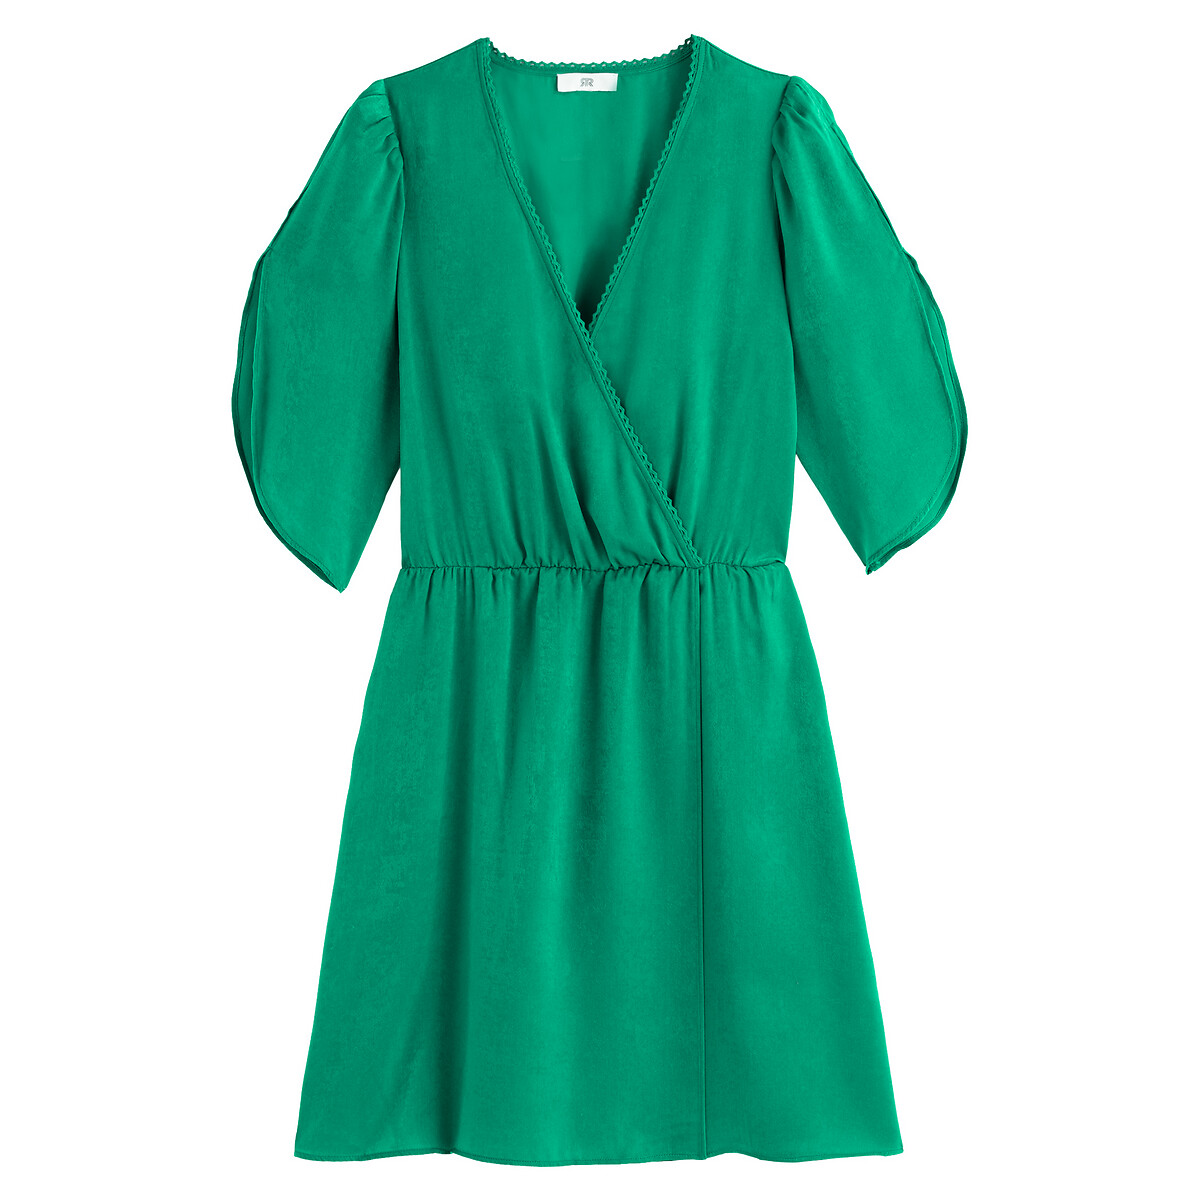 Платье LaRedoute Короткое с запахом короткие рукава 46 (FR) - 52 (RUS) зеленый, размер 46 (FR) - 52 (RUS) Короткое с запахом короткие рукава 46 (FR) - 52 (RUS) зеленый - фото 5